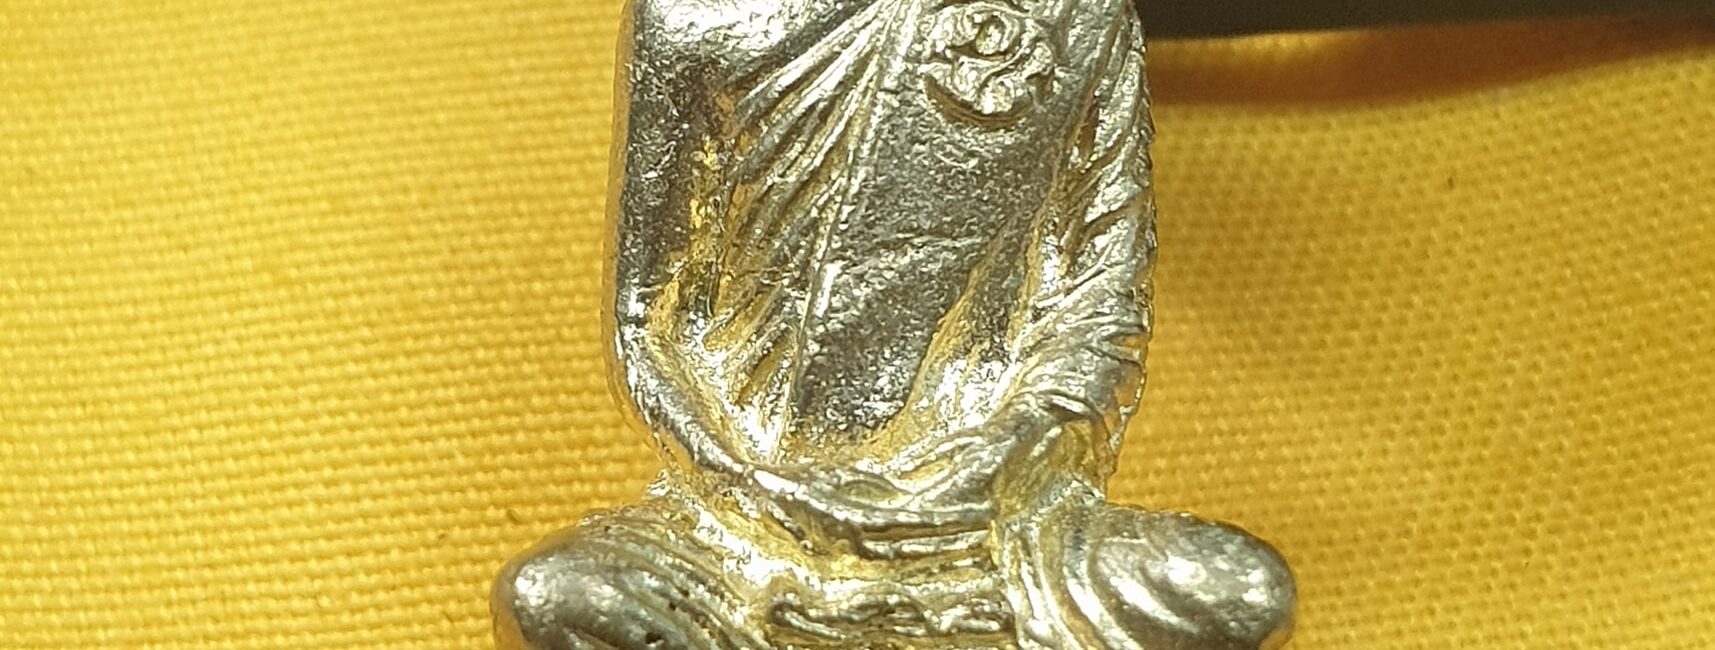 รูปหล่อลอยองค์ในหลวงทรงผนวช ปี2508 เนื้อโลหะกะไหล่ทองสม